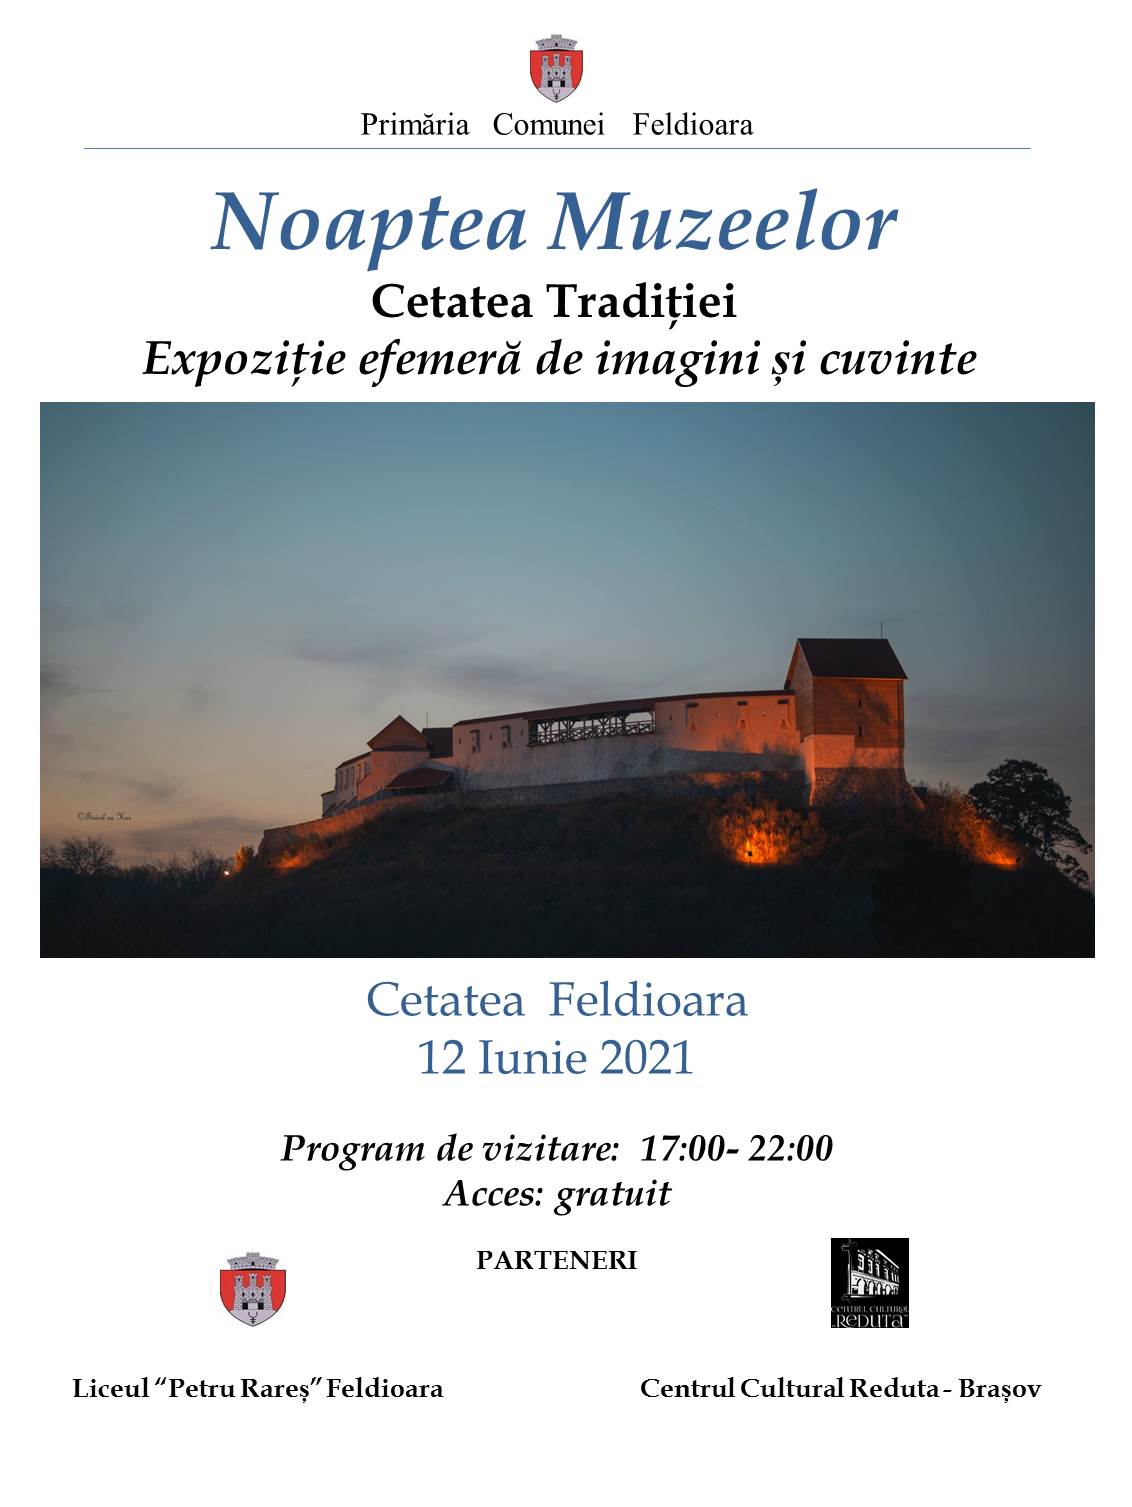 Proiecția ,,Oameni și datini” prezentată la Noaptea Muzeelor în Cetatea Feldioarei